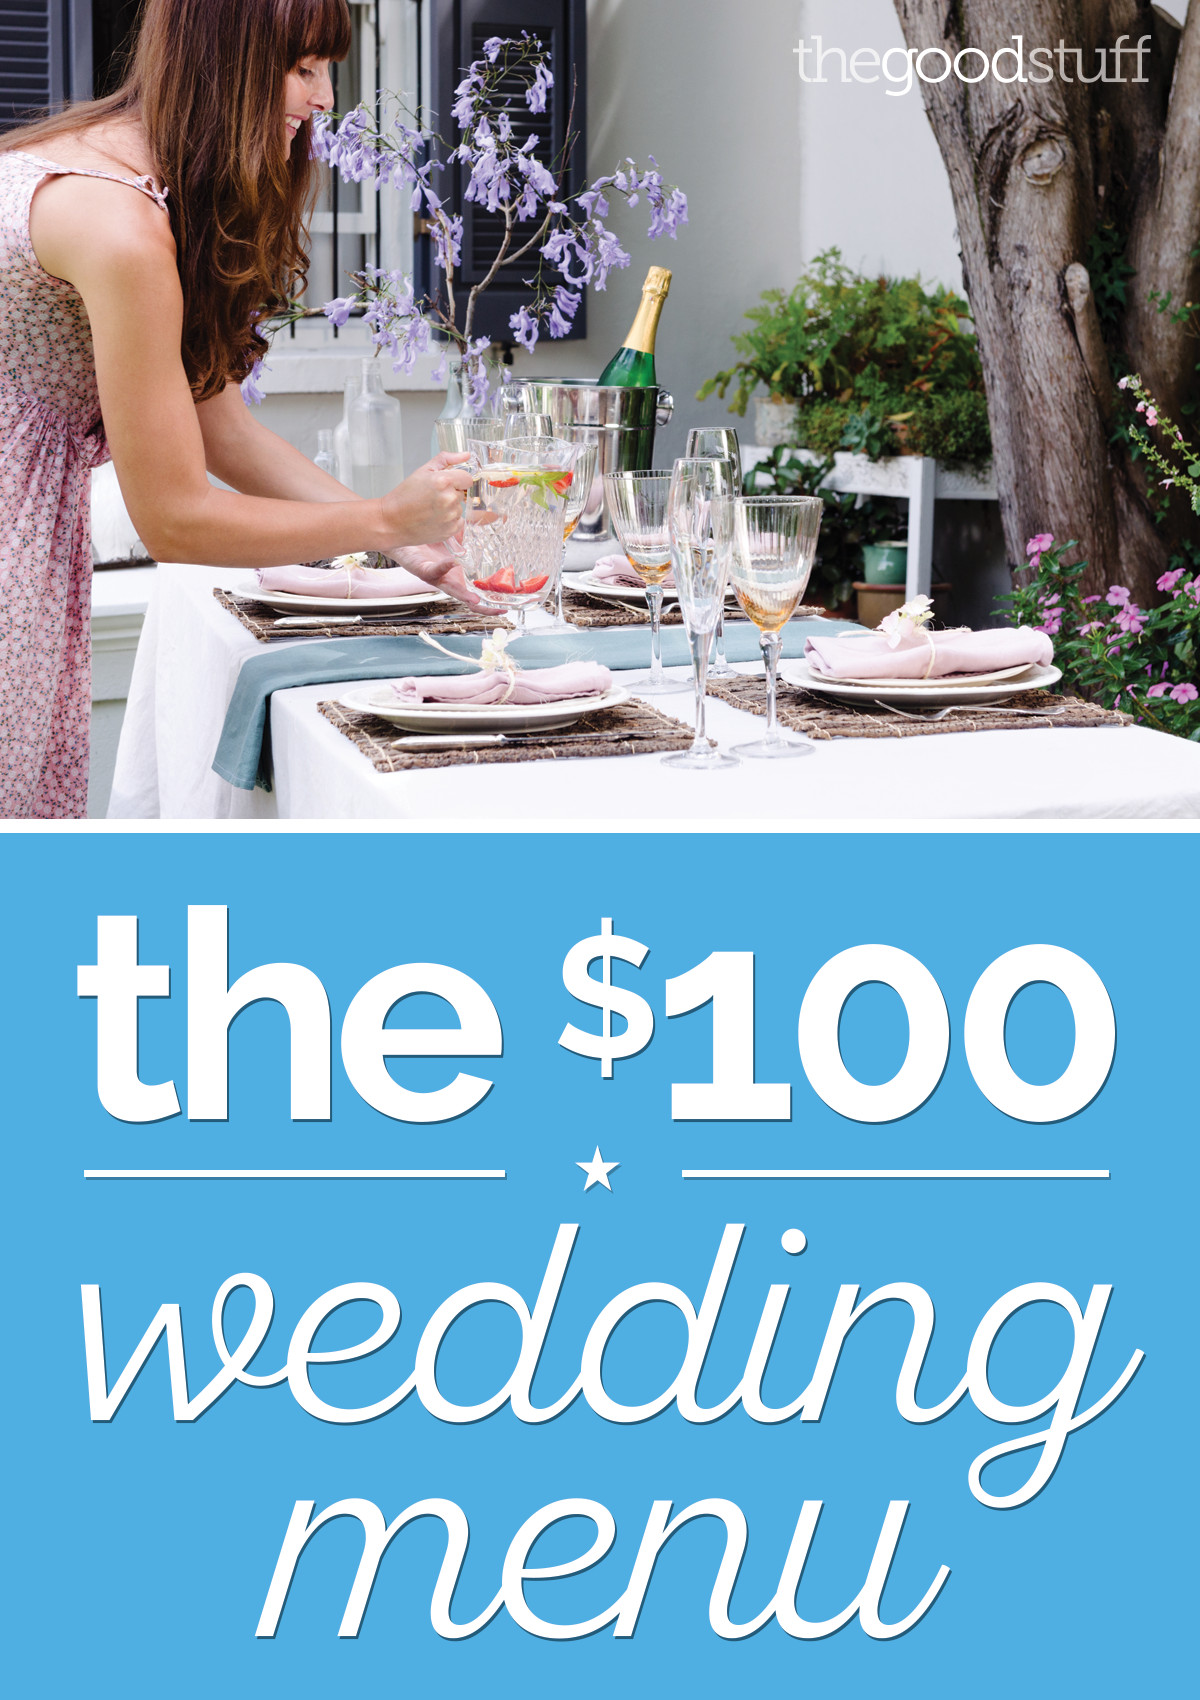 Wedding Buffet Menu Ideas DIY
 A DIY Wedding Menu for Just $100 DIY Ideas